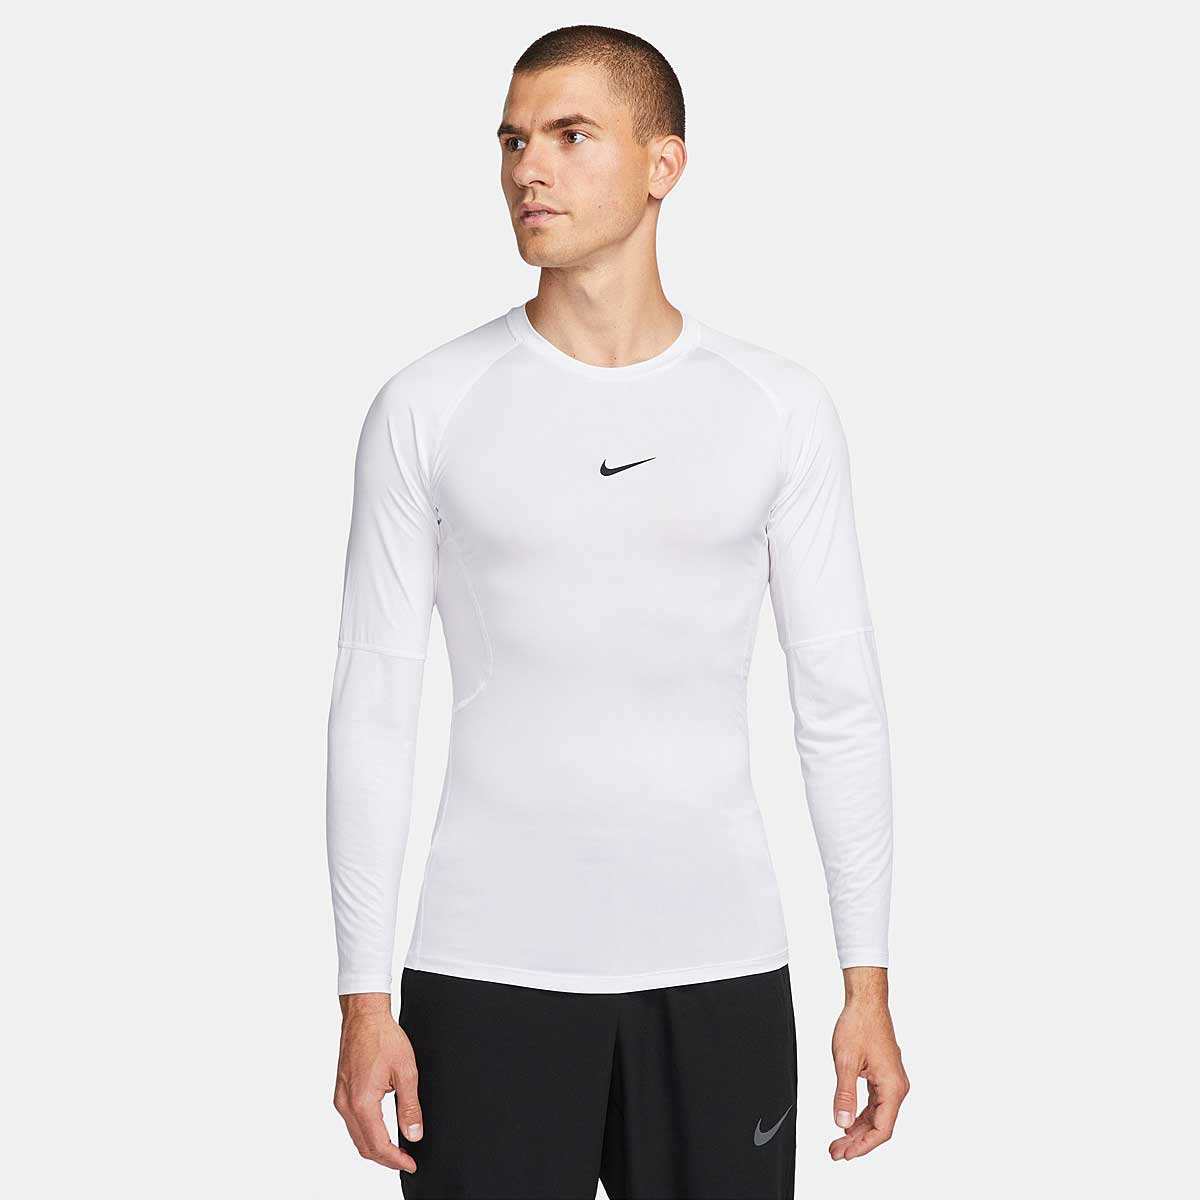 Image of Nike Pro Dri-fit Tight Longsleeve Top, White/black